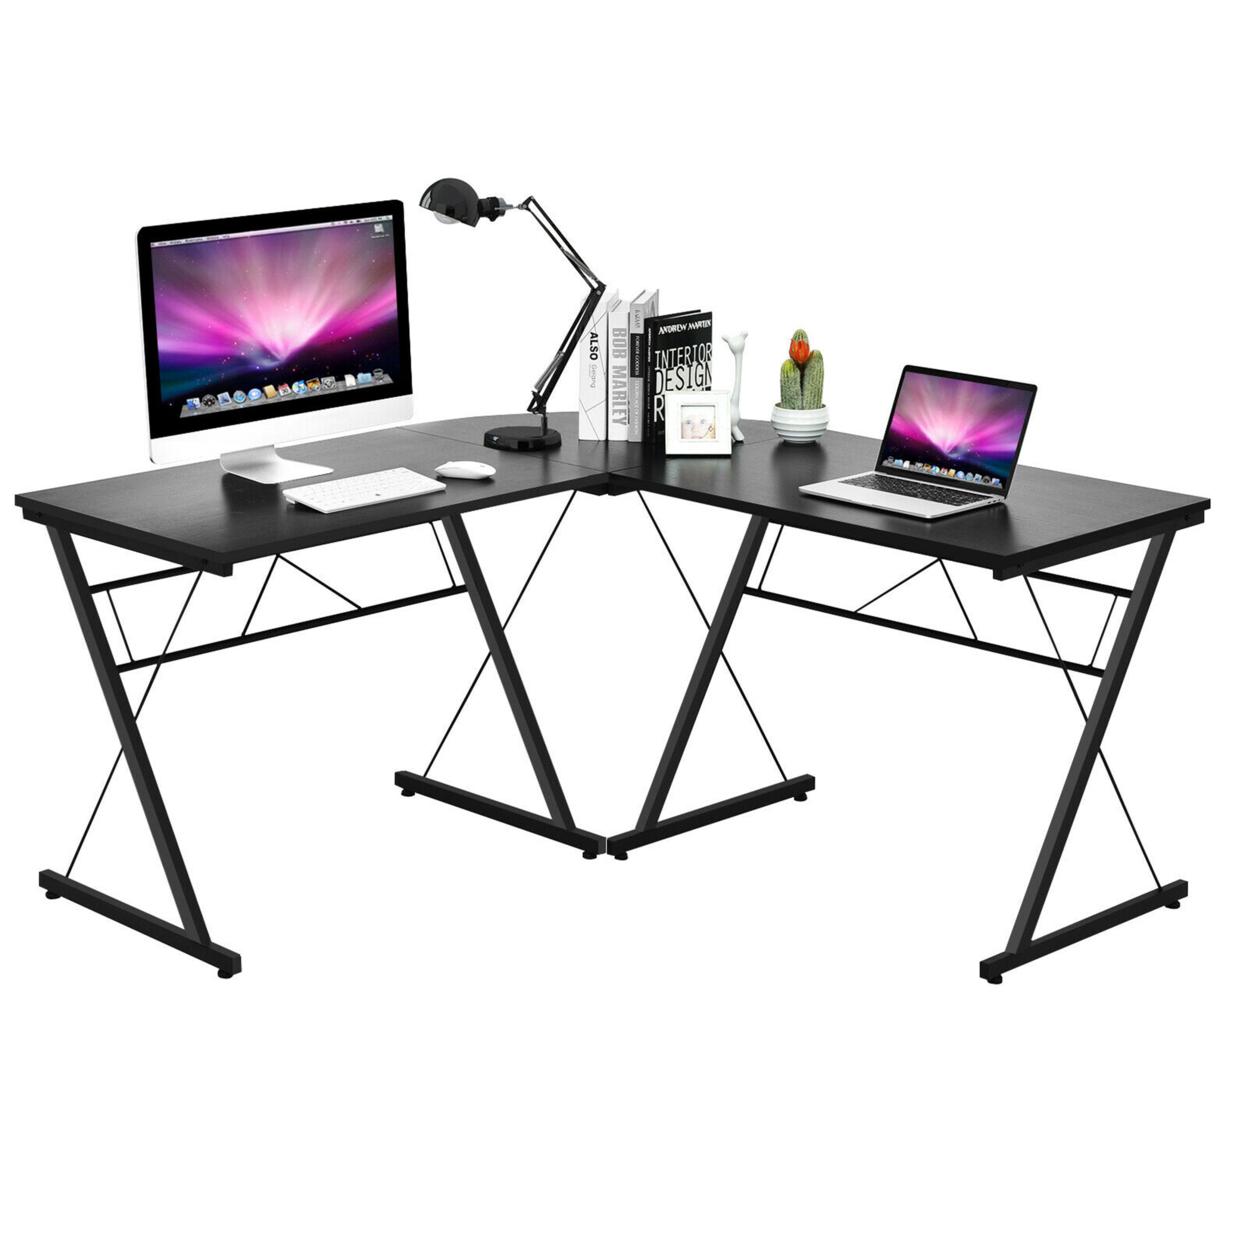 59'' L-Shaped Corner Desk Home Office Computer Table Study Workstation - Black